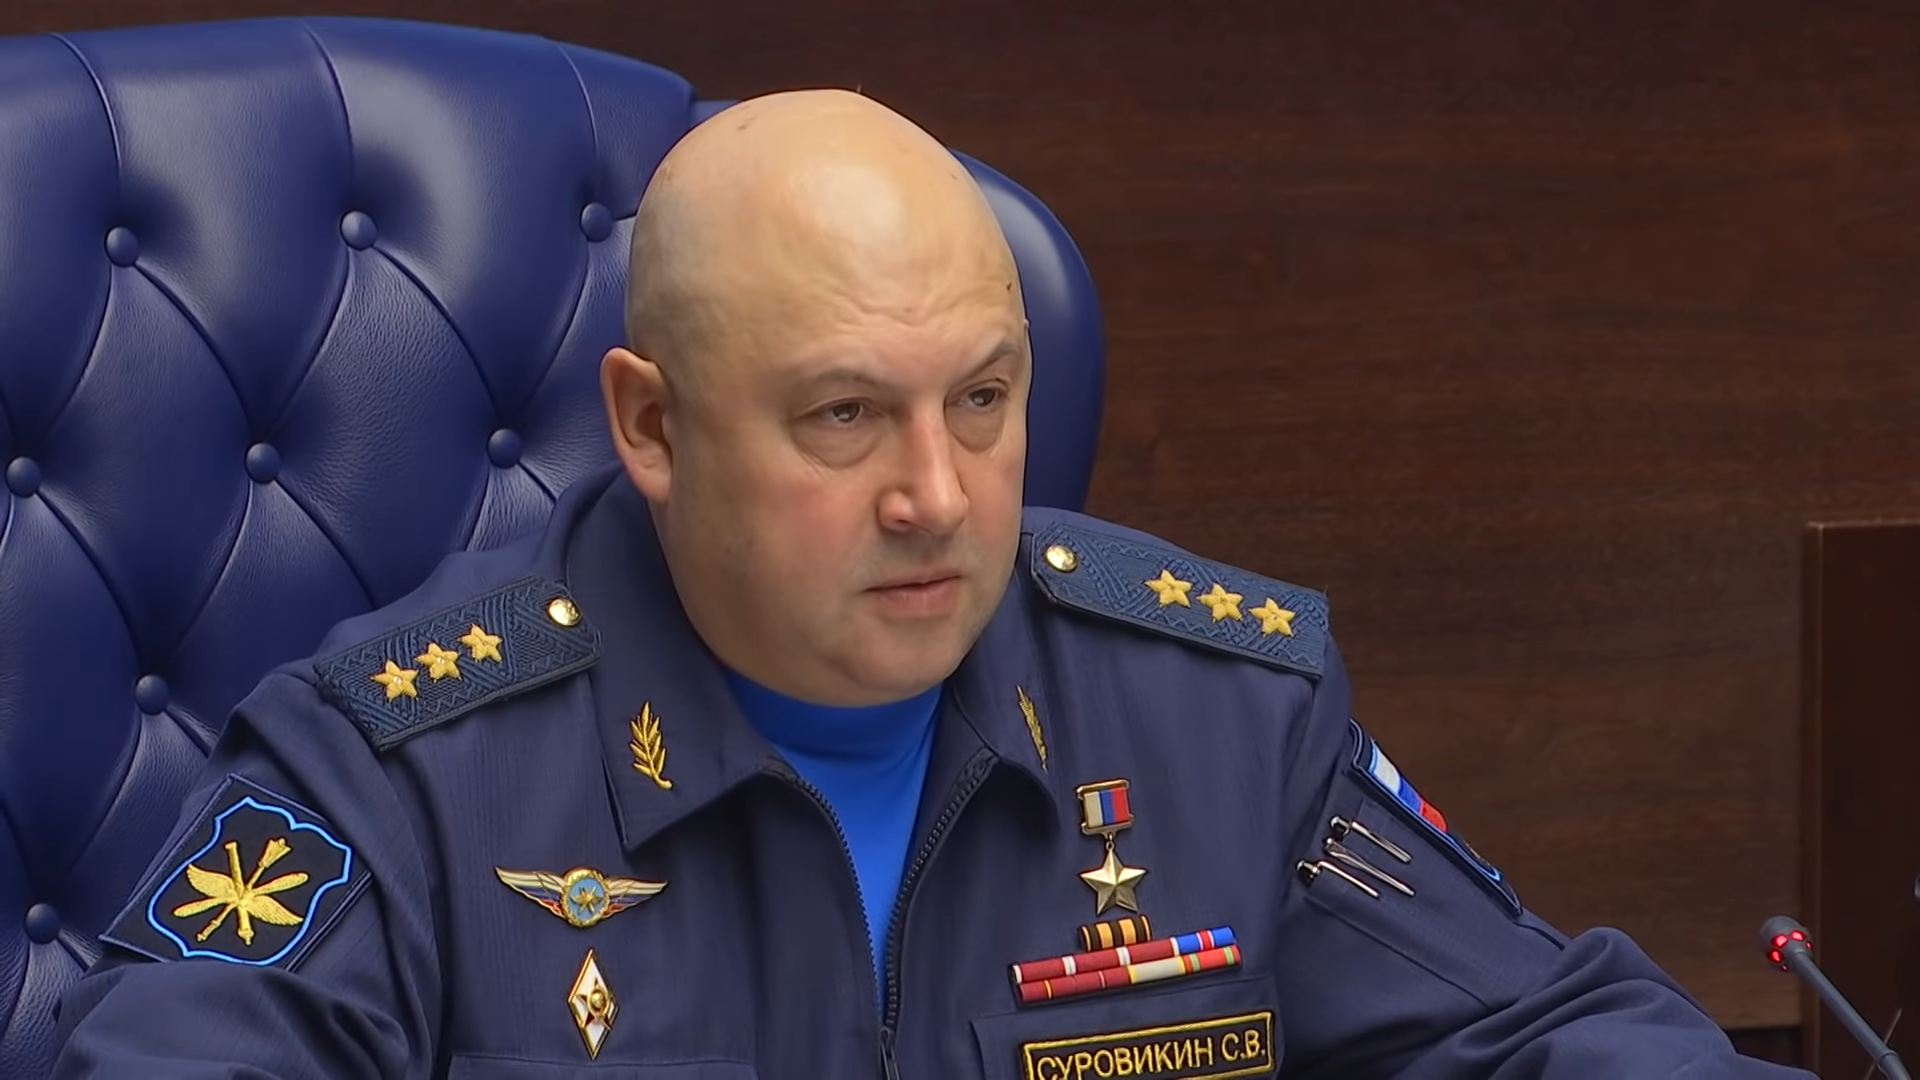 Сергей Суровикин, генерал